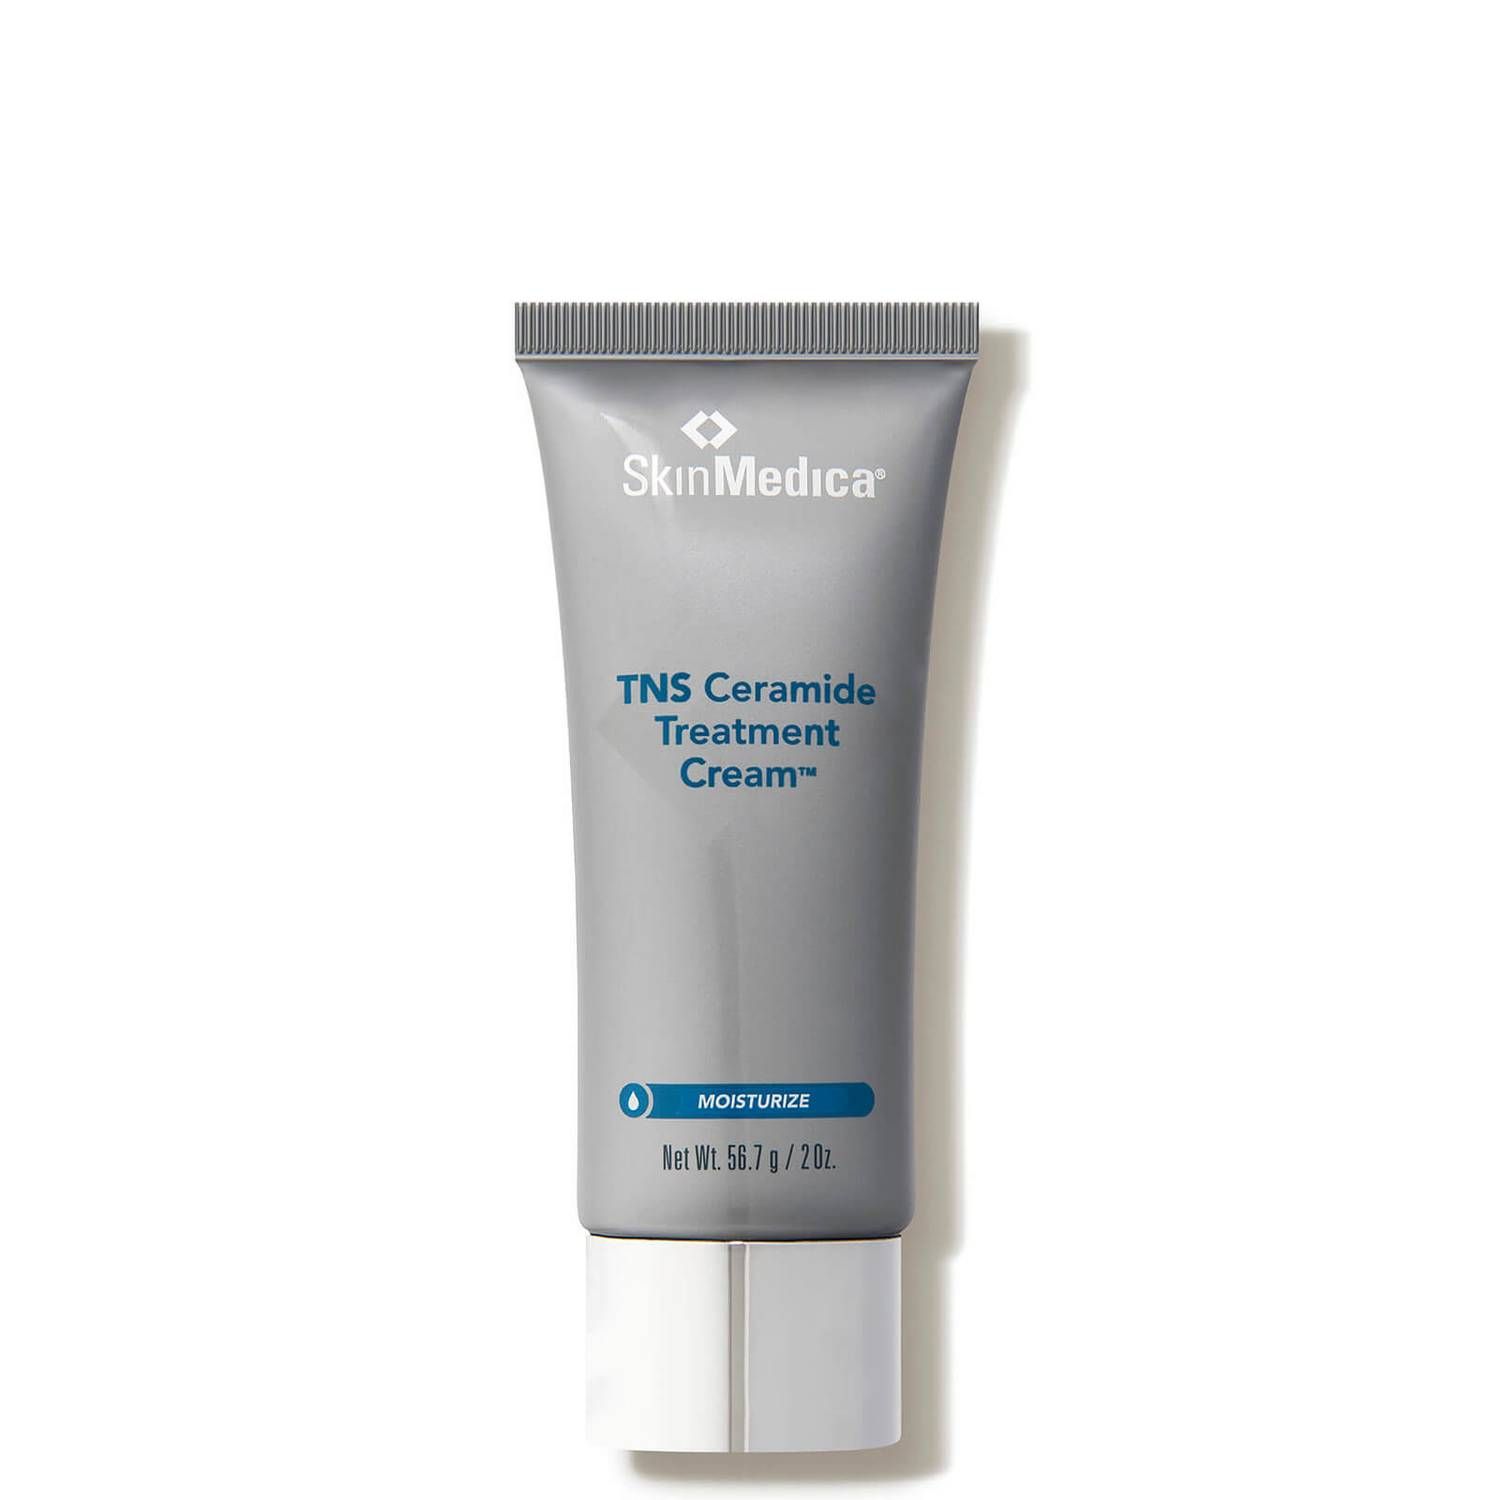 SkinMedica TNS Ceramide Treatment Cream (2 oz.) | Dermstore (US)